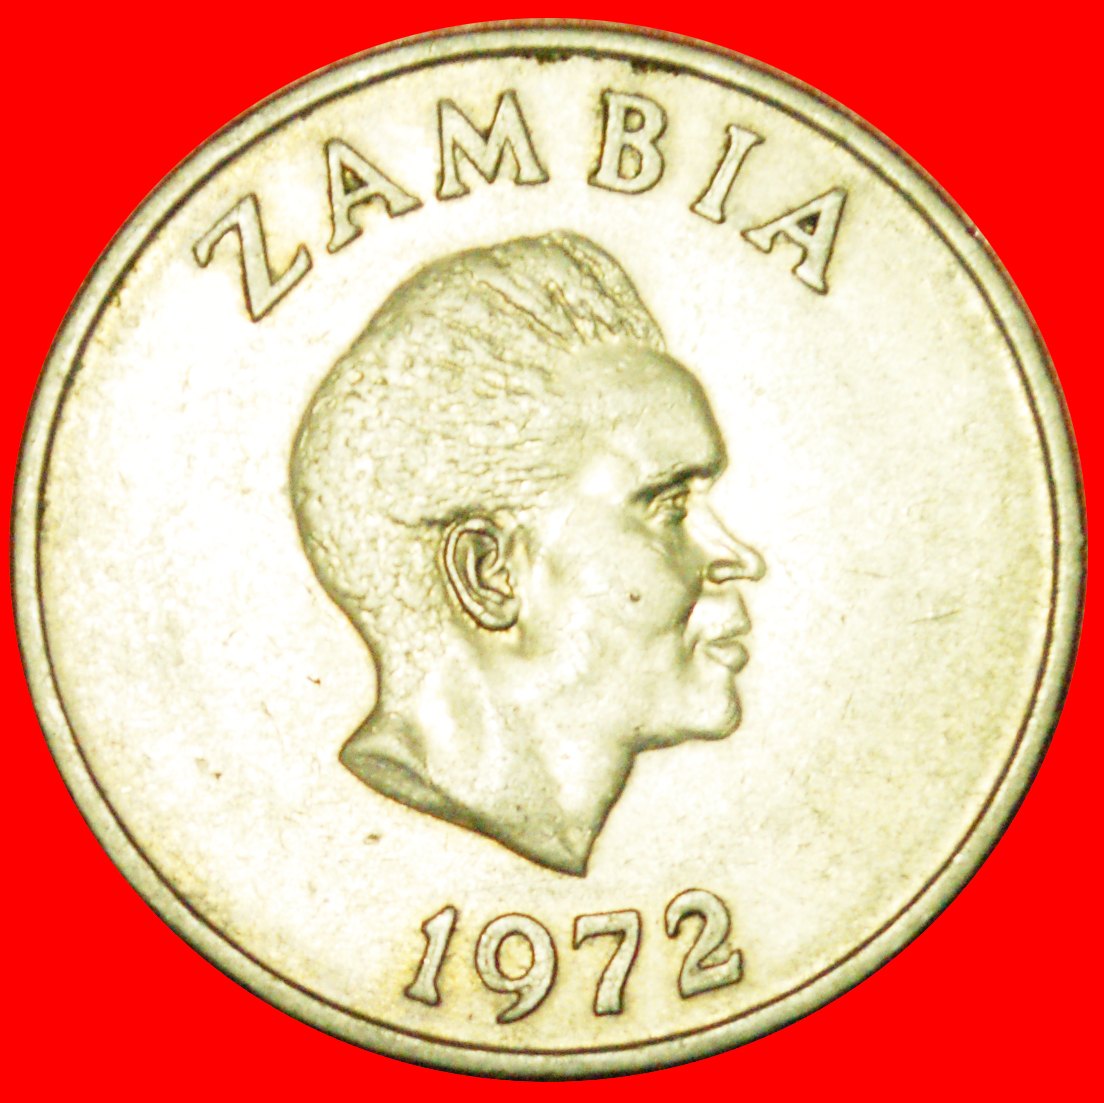  + GROSSBRITANNIEN: SAMBIA ★ 20 NGWEE 1972! OHNE VORBEHALT!   